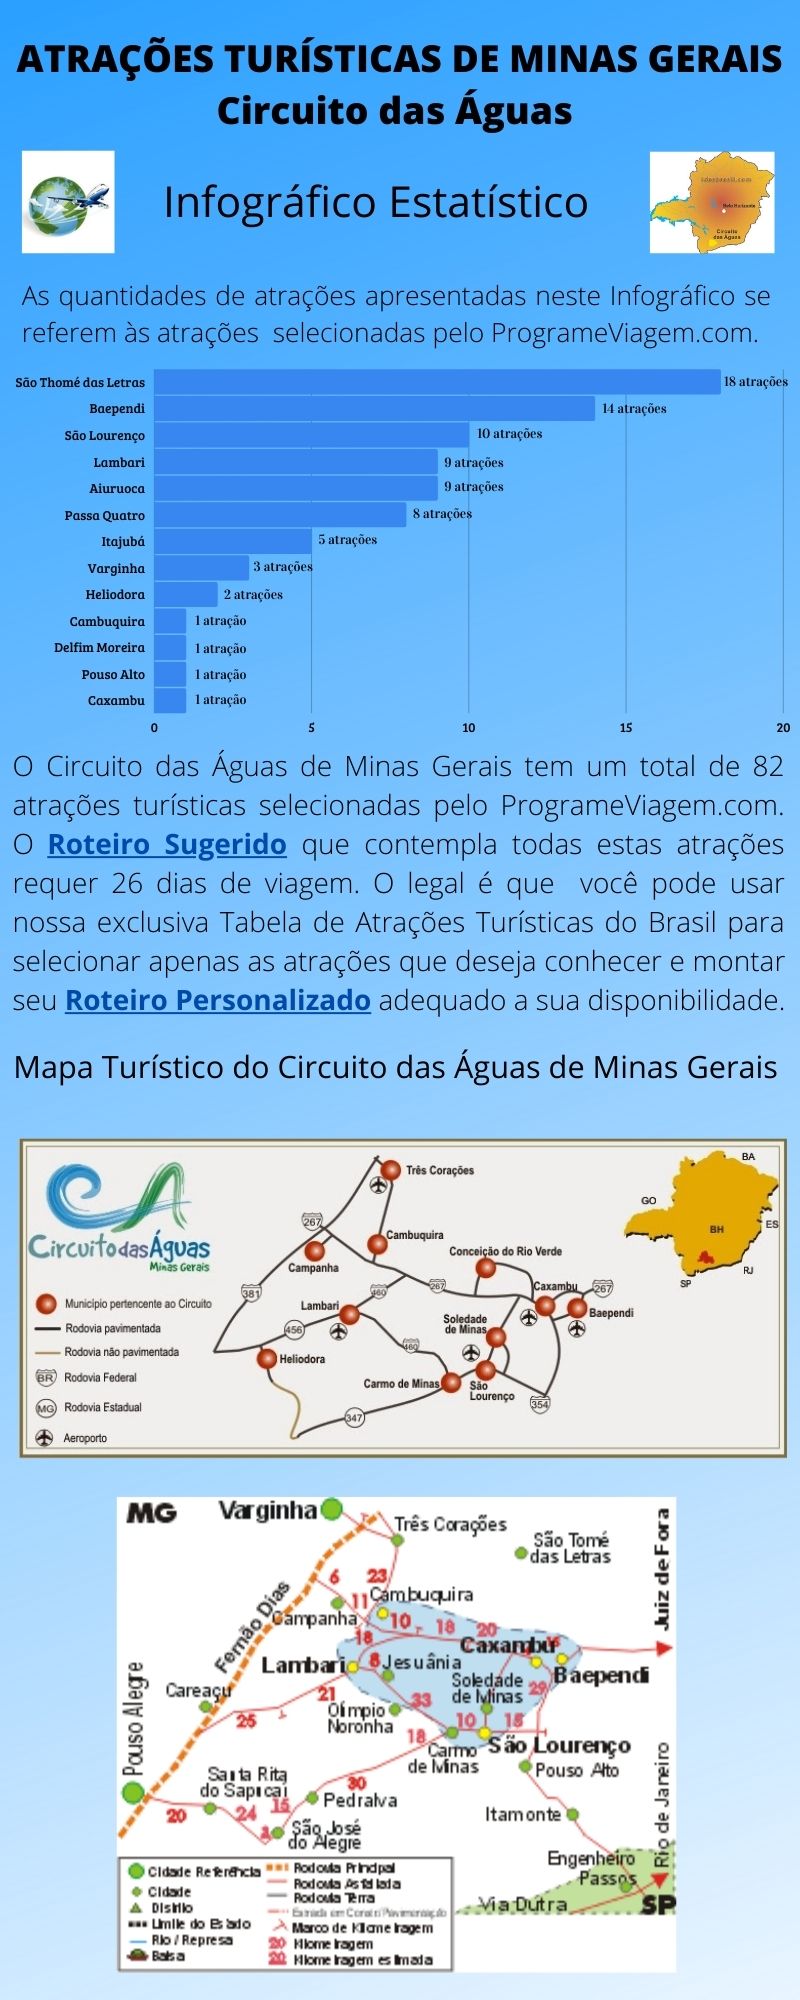 Infográfico Atrações Turísticas de Minas Gerais (Circuito das Águas)